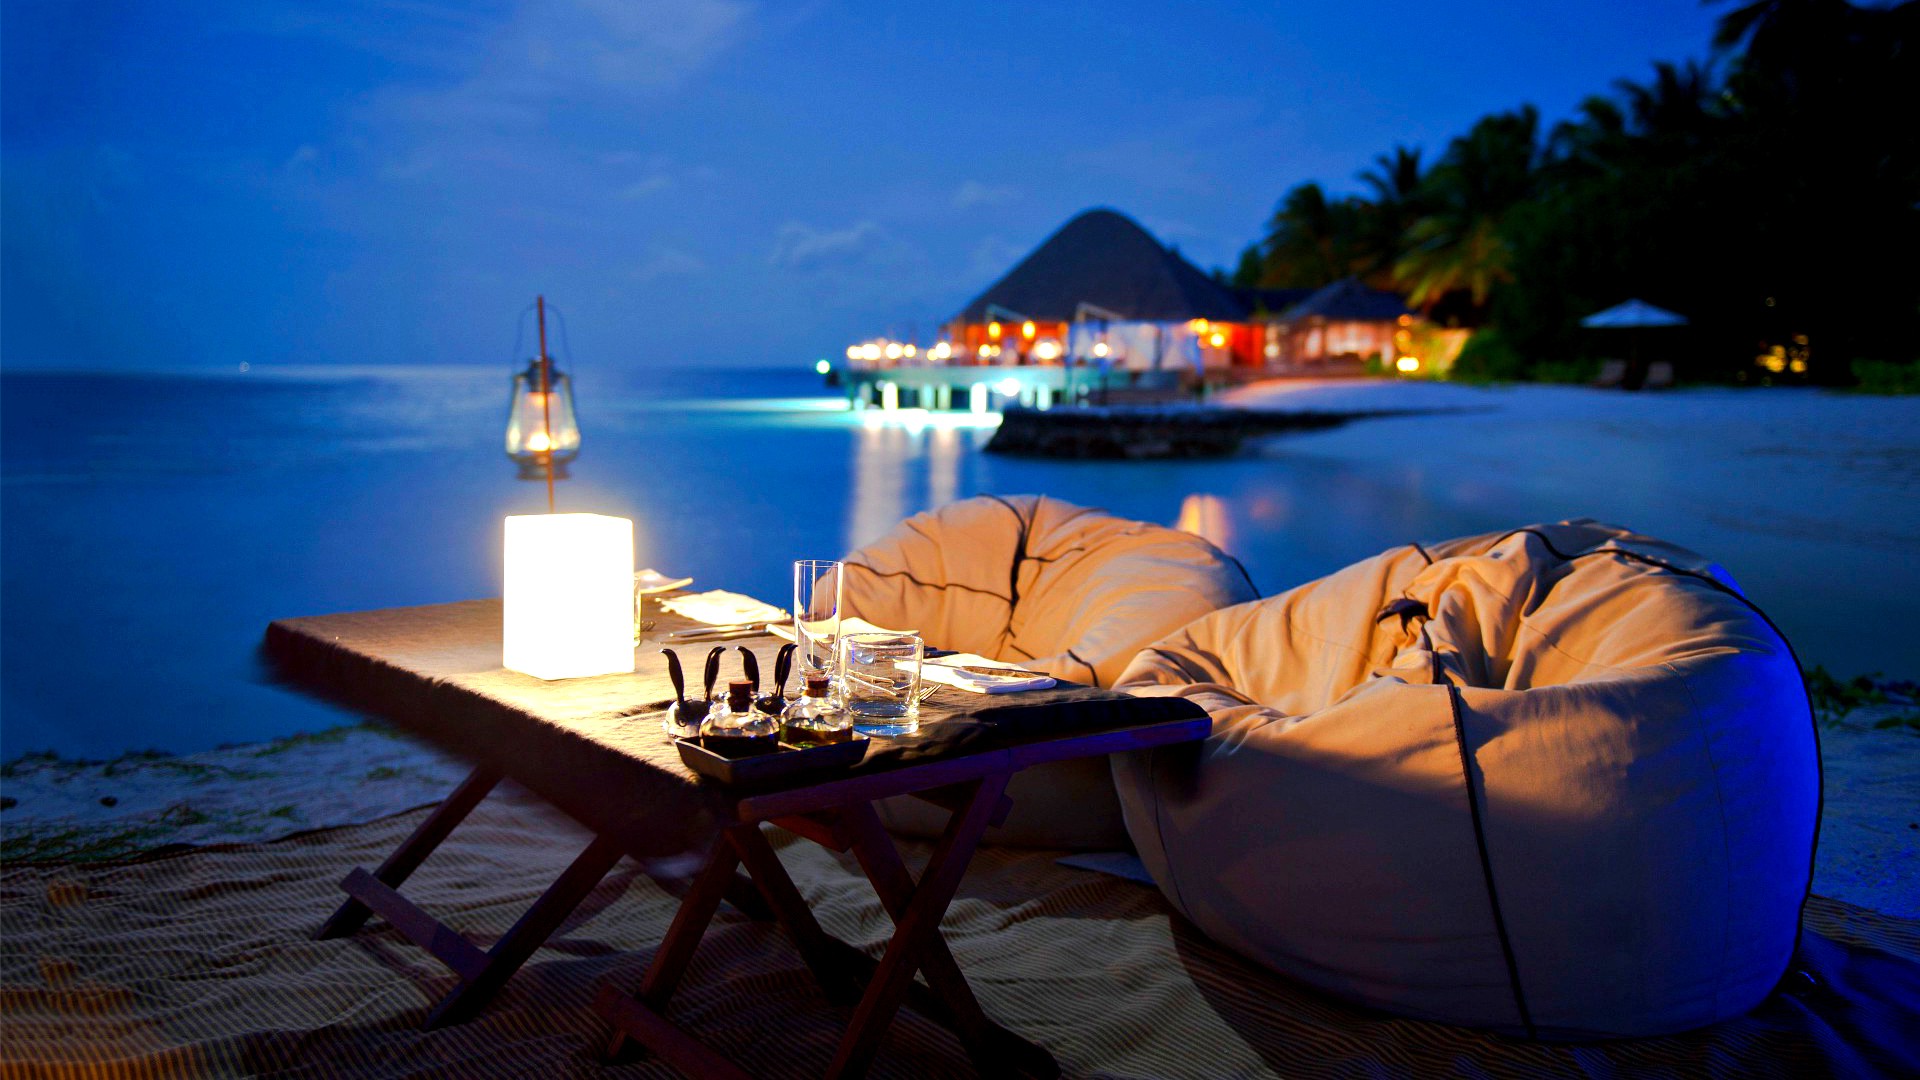 晚上，海滩，晚餐，夜晚，浪漫美景，风景桌面壁纸